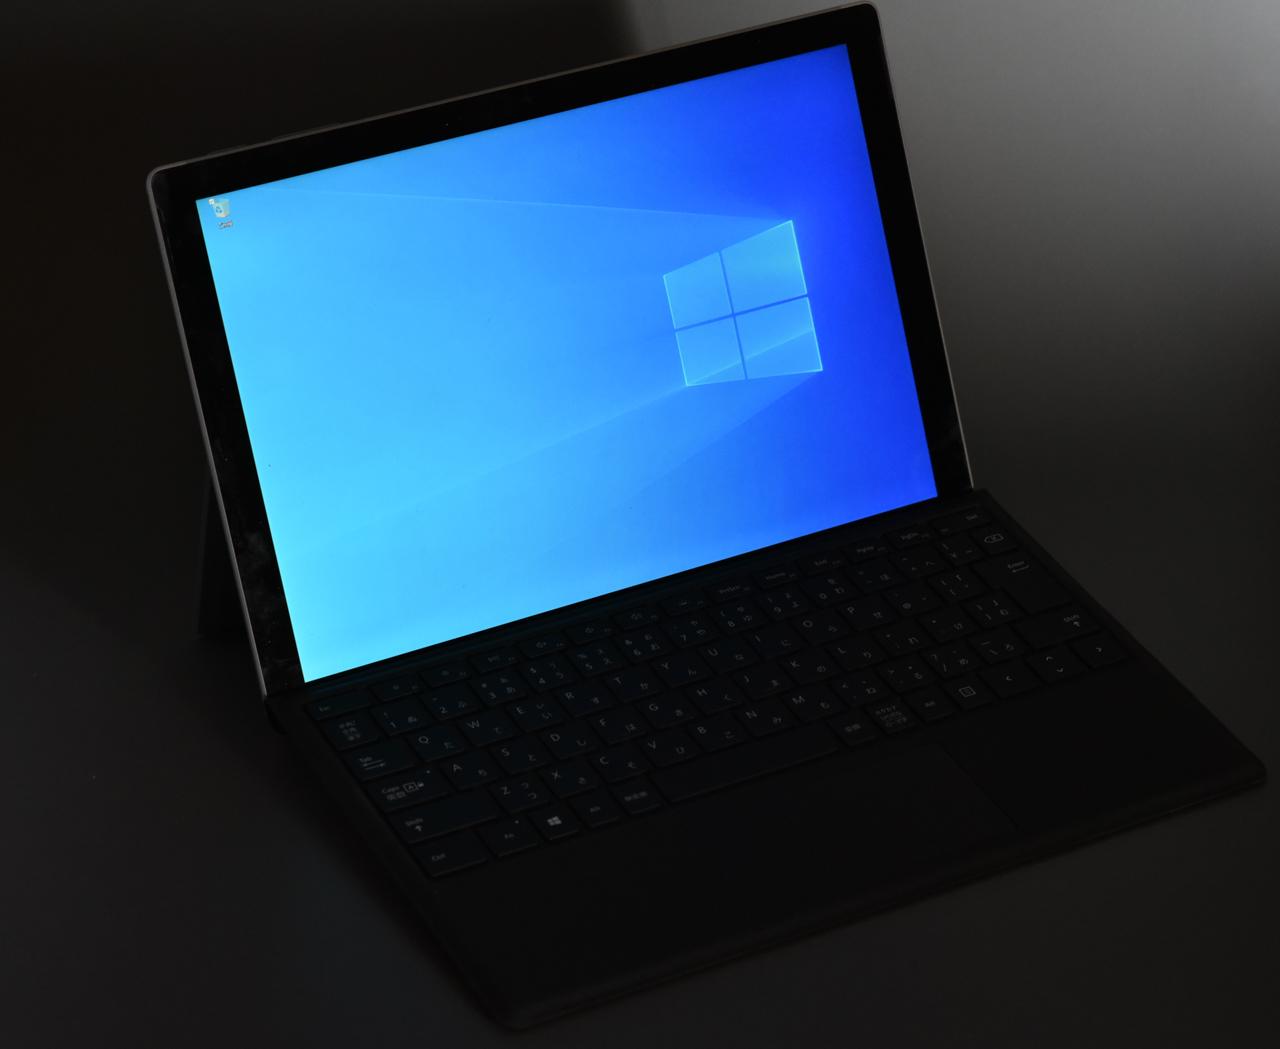 マイクロソフト Surface Pro7 i5/8GB/256GB 使用回数少 - ノートPC